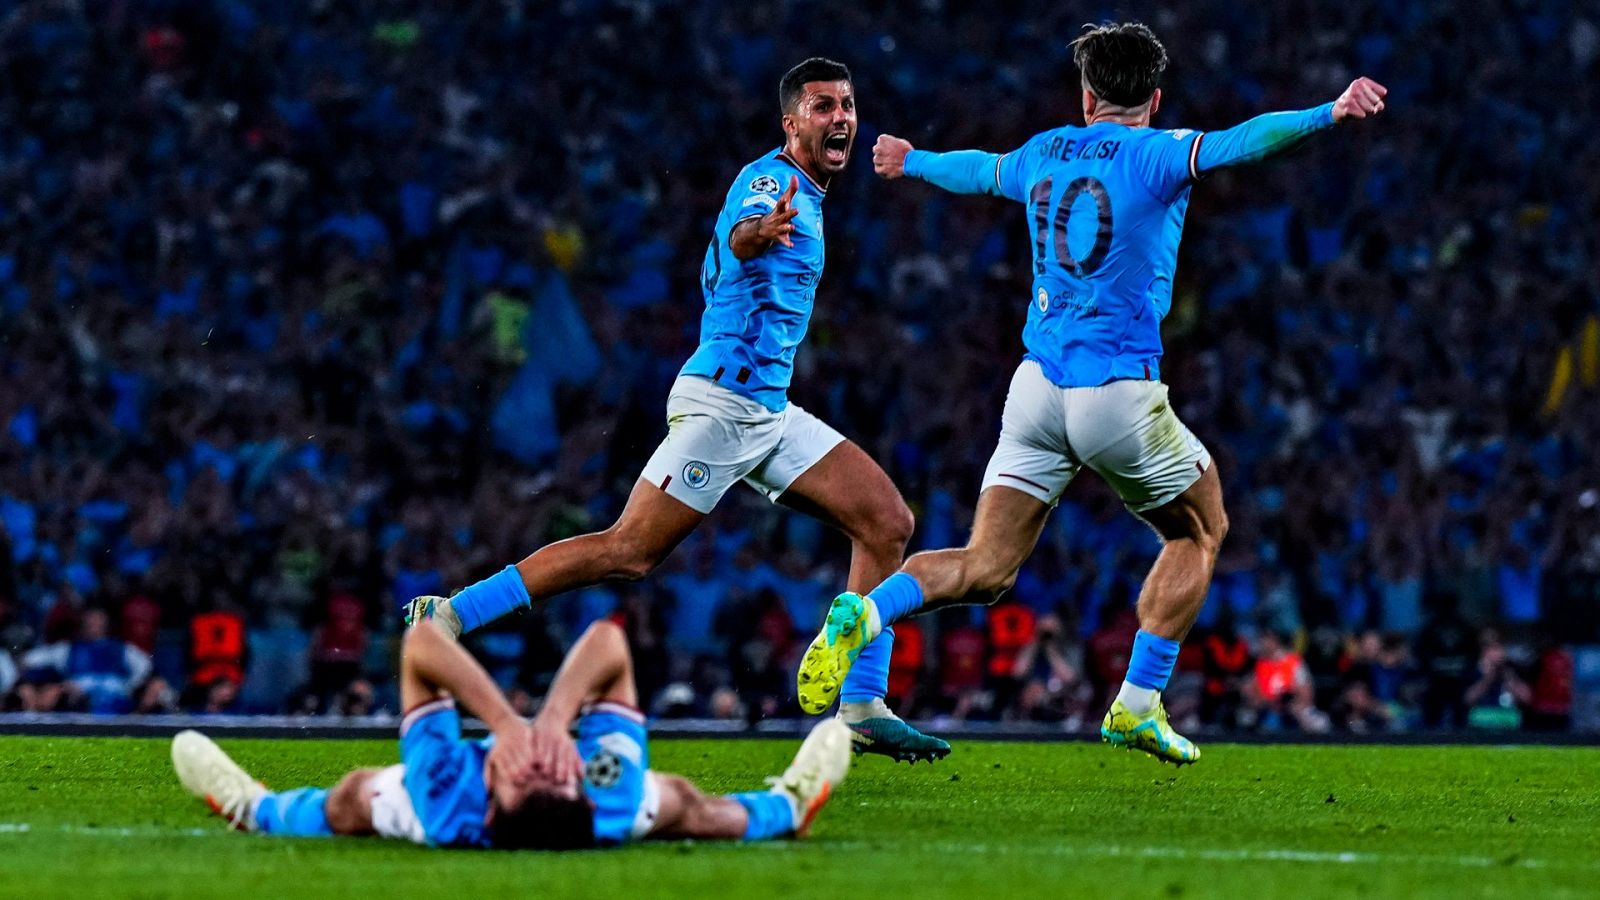 Los mejores momentos de la final de Champions League entre Manchester City e Inter.